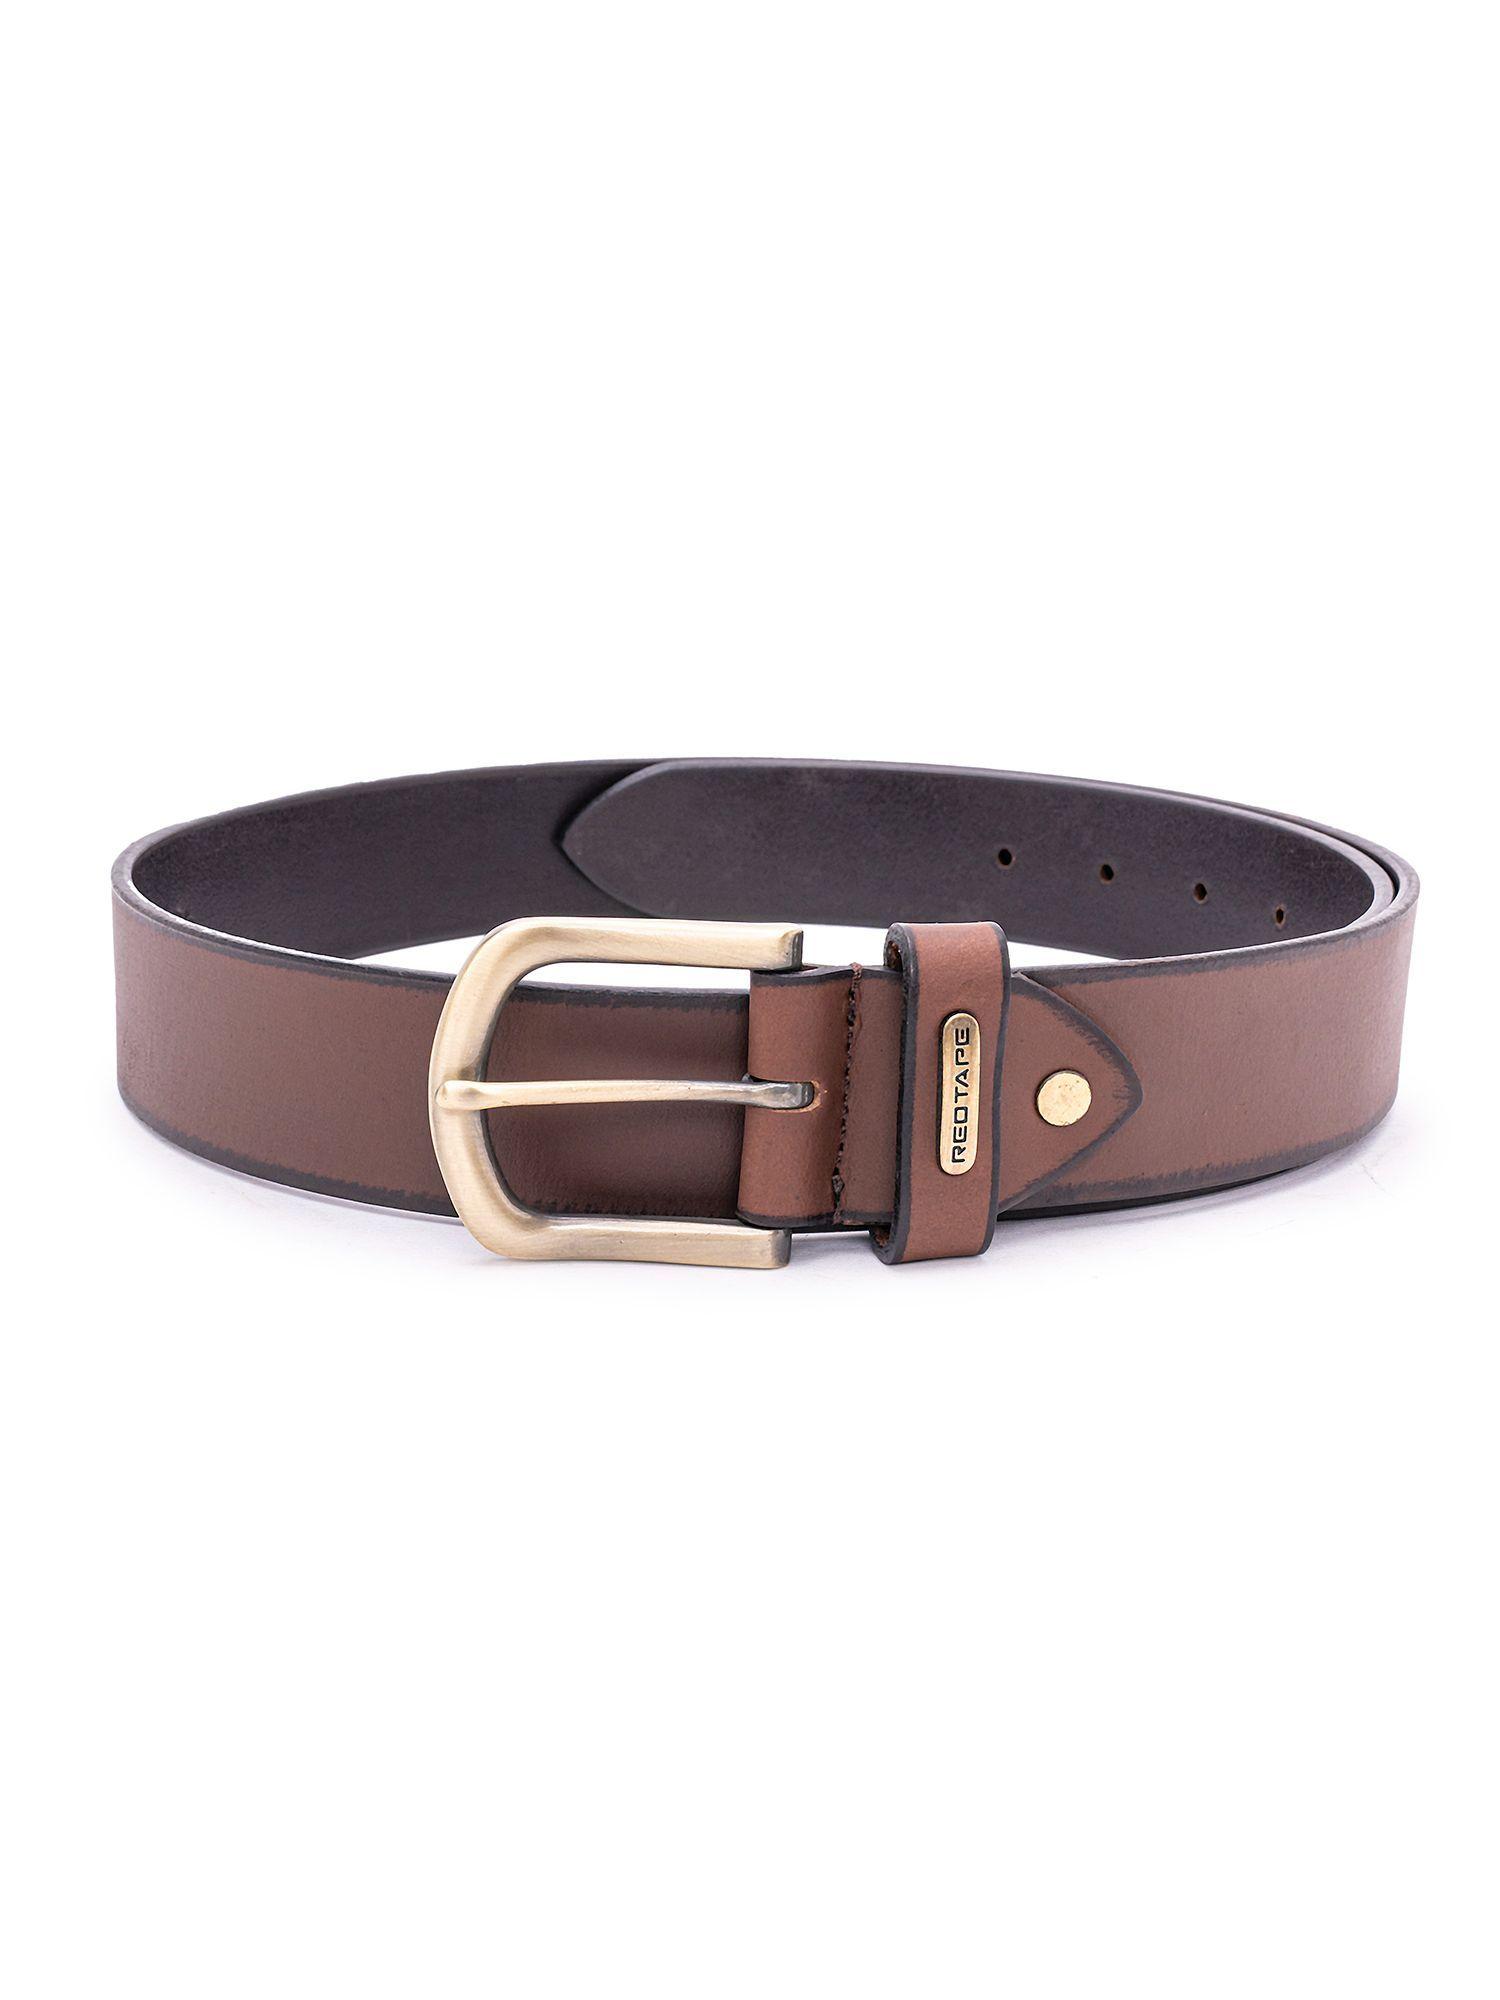 mens-brown-leather-formal-belt